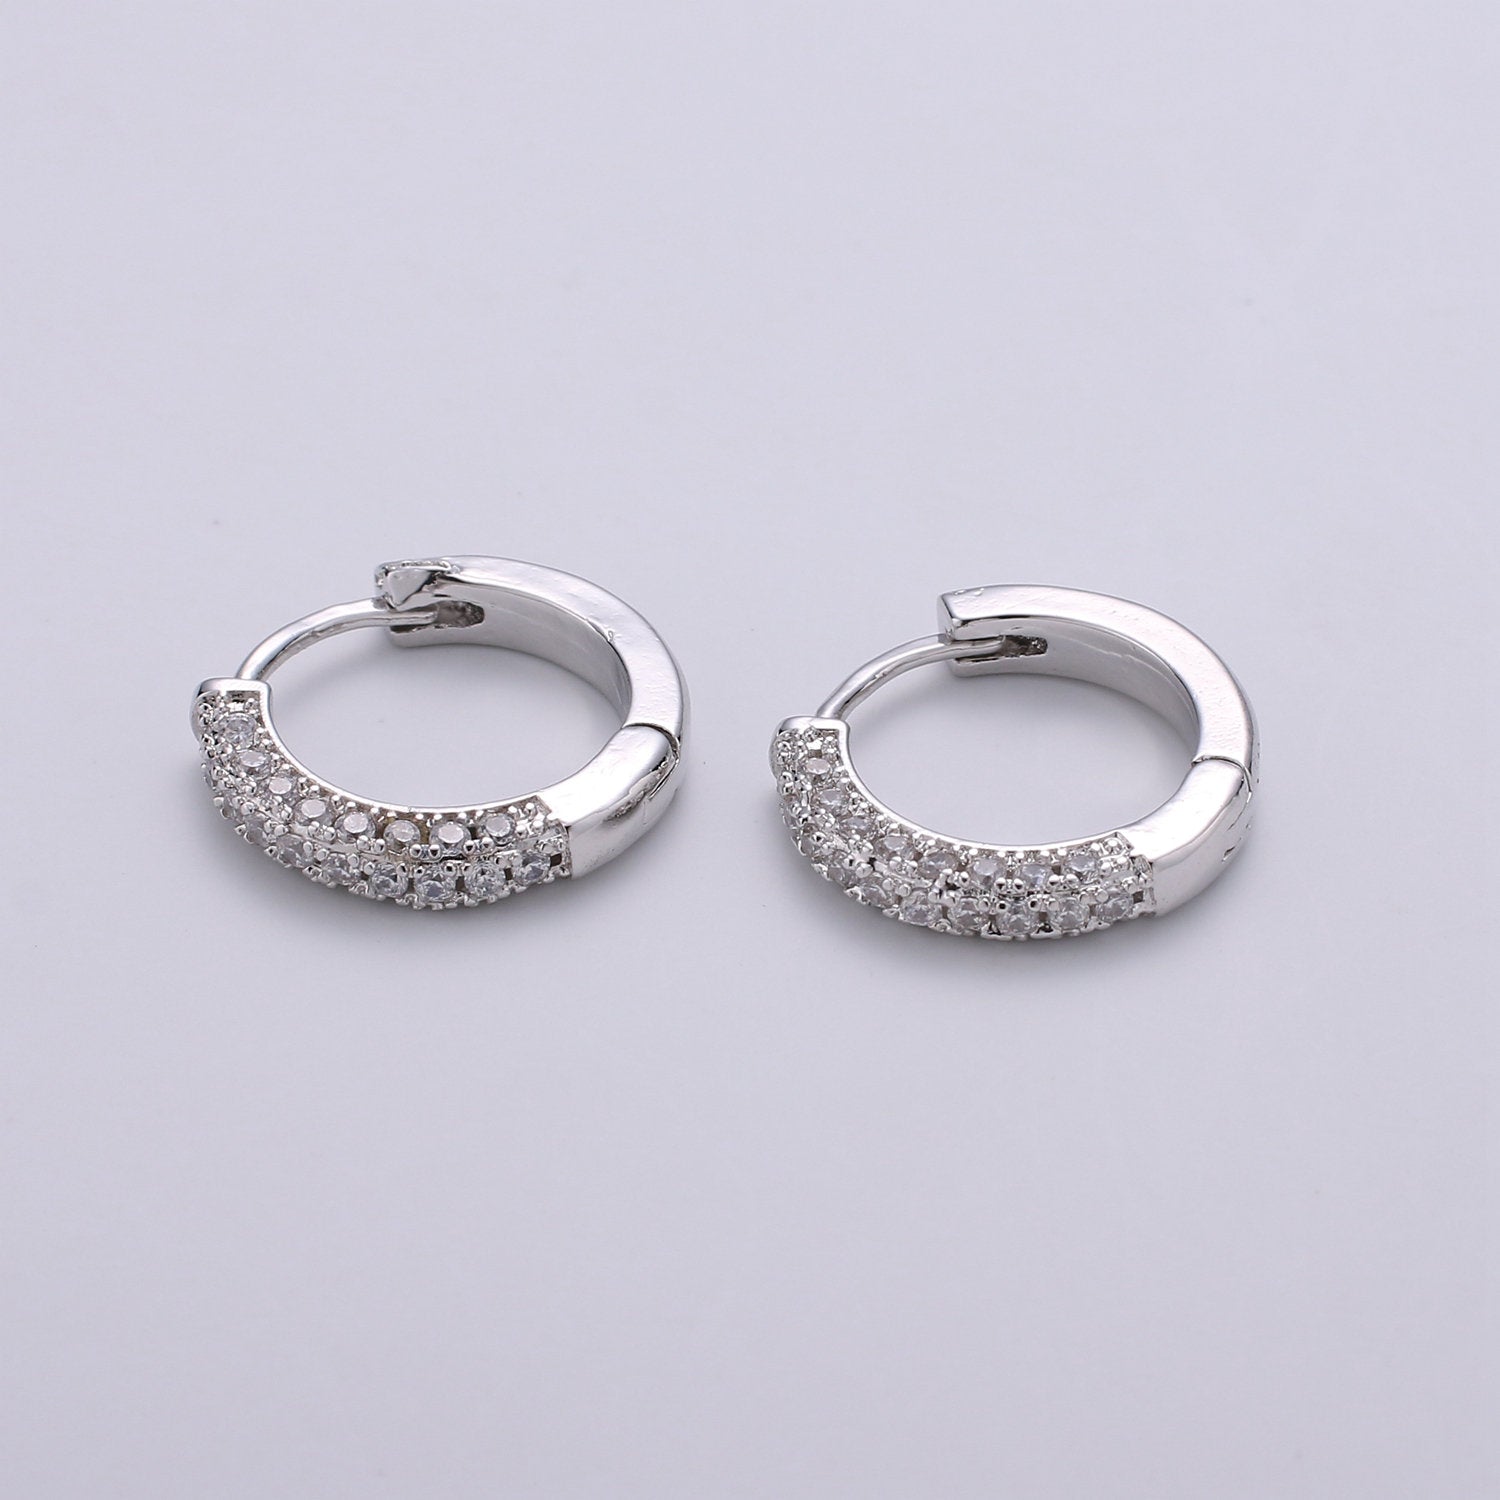 1 pair 14k Gold Filled Minimalist Earring Dainty CZ Huggie Hoop Earrings Silver Earring 18mm - DLUXCA